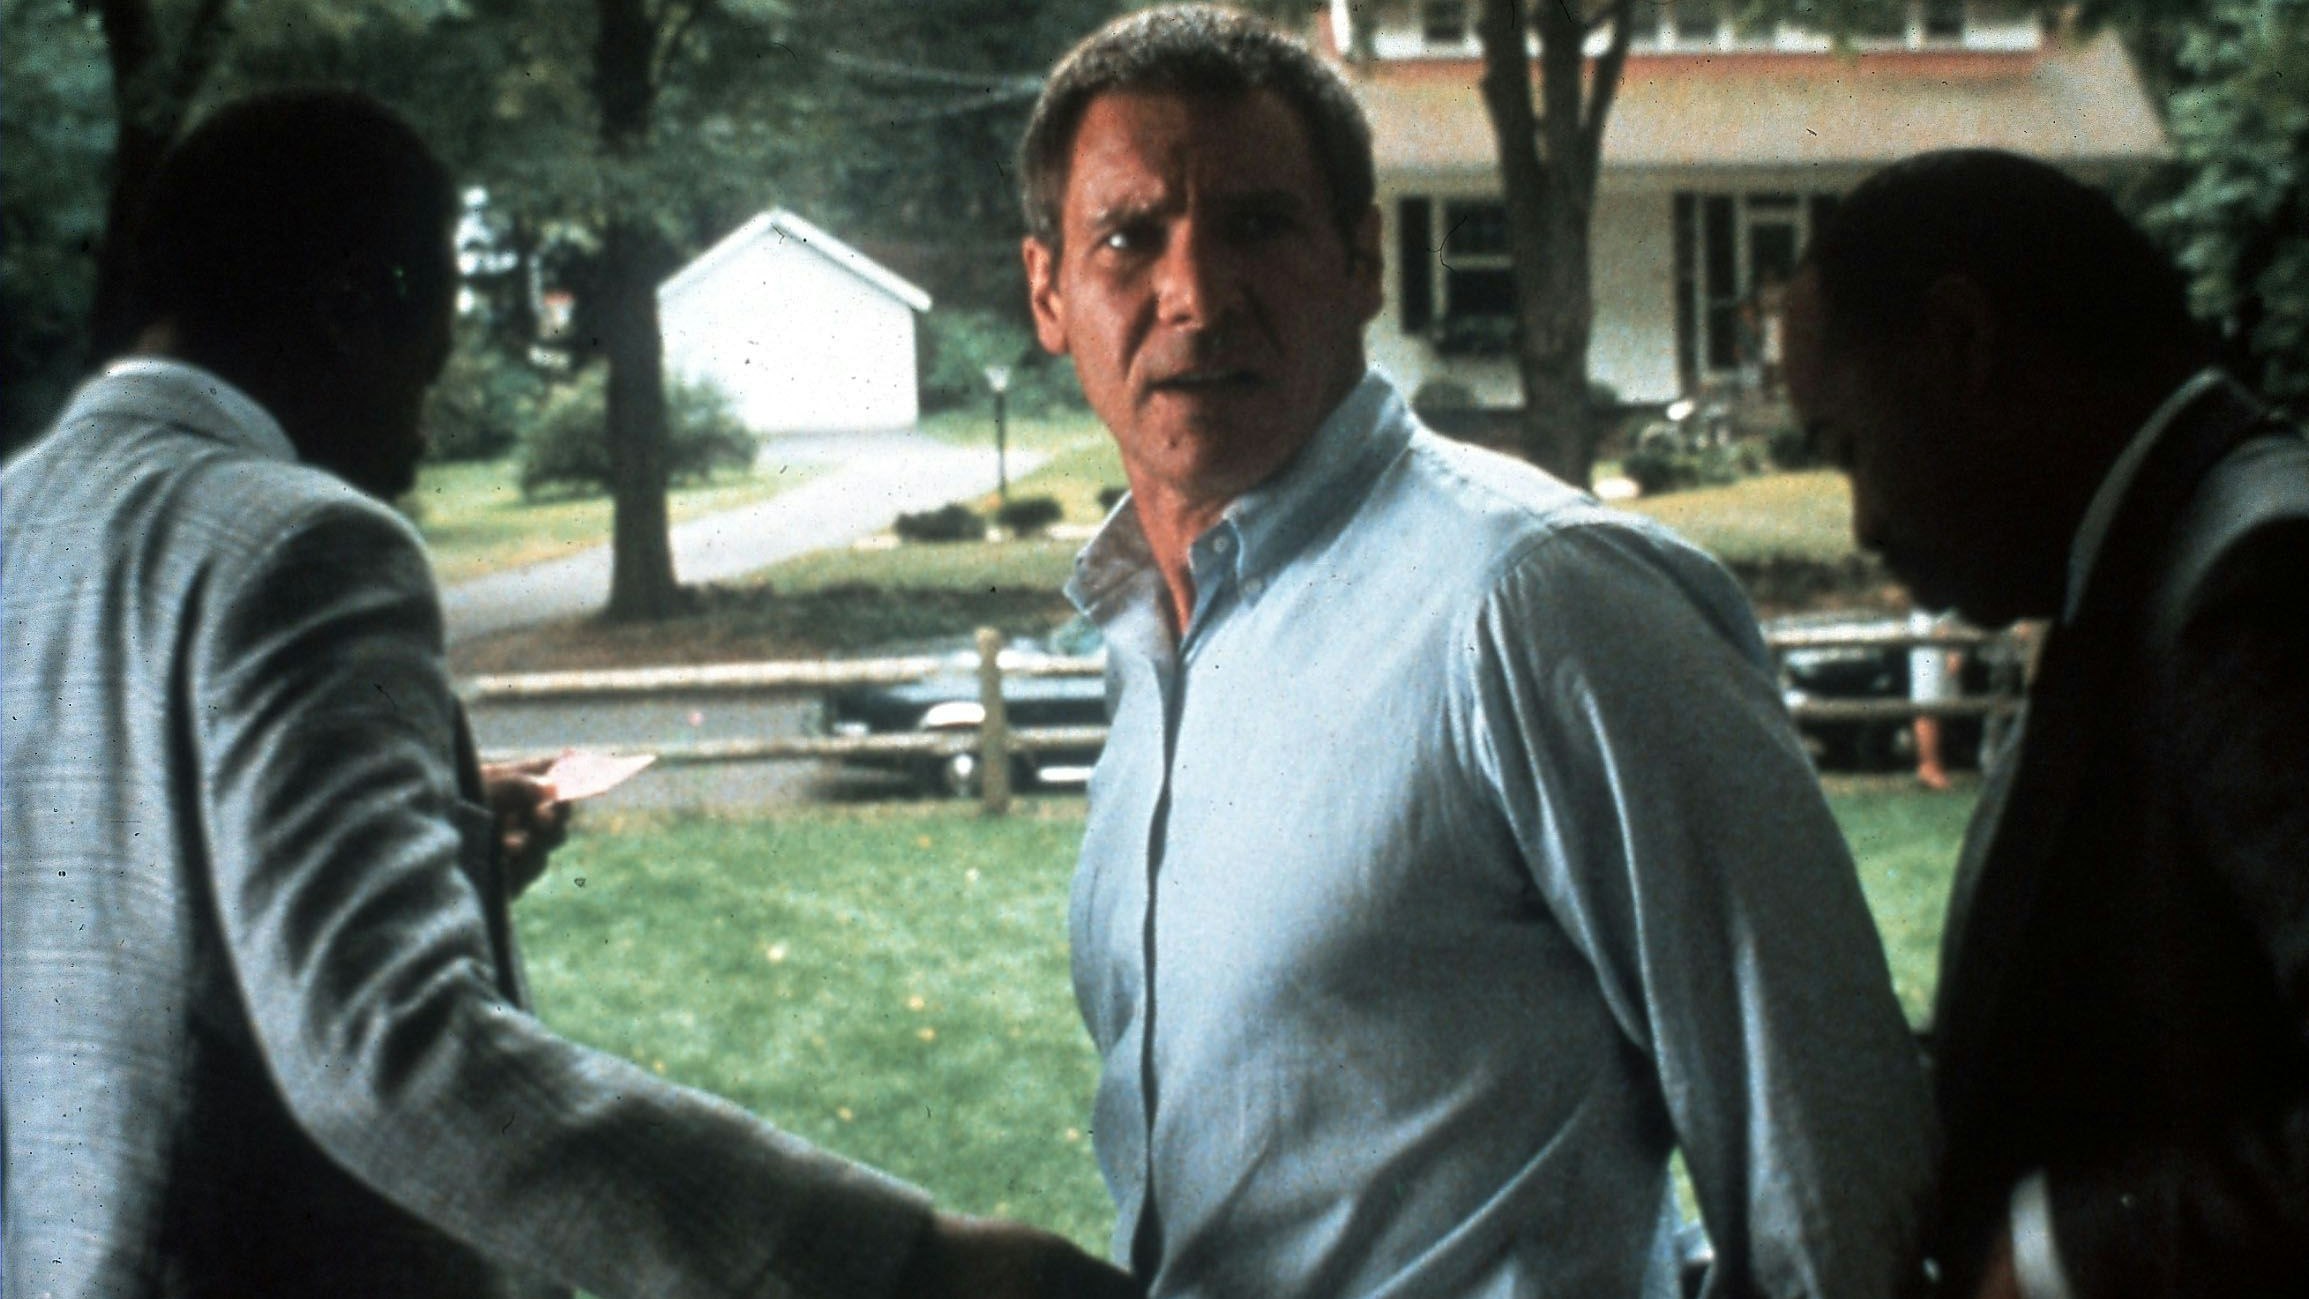 Harrison Ford in der gleichnamigen Verfilmung des Stoffes aus dem Jahr 1990: "Rusty hätte mit den sichergestellten Spuren und der heutigen Technologie keine andere Wahl gehabt, als sich schuldig zu bekennen", meint Autor Scott Turow